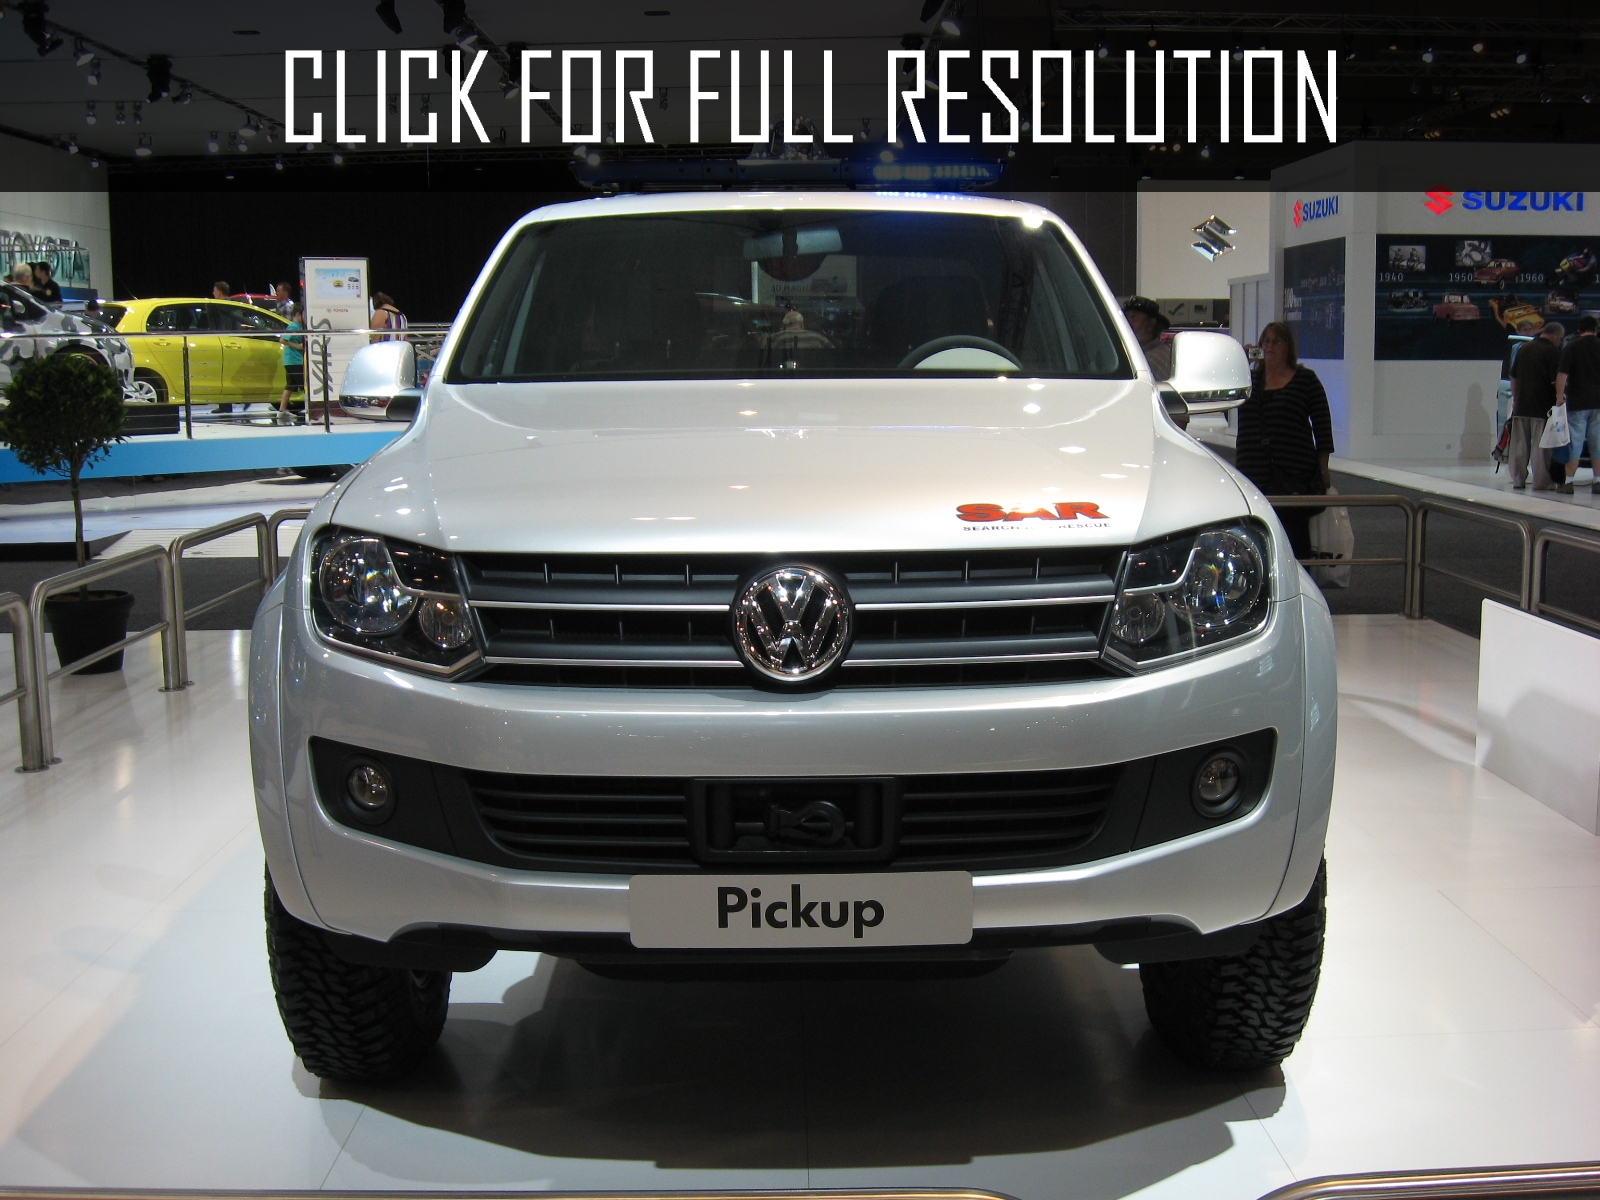 Volkswagen Pick-Up